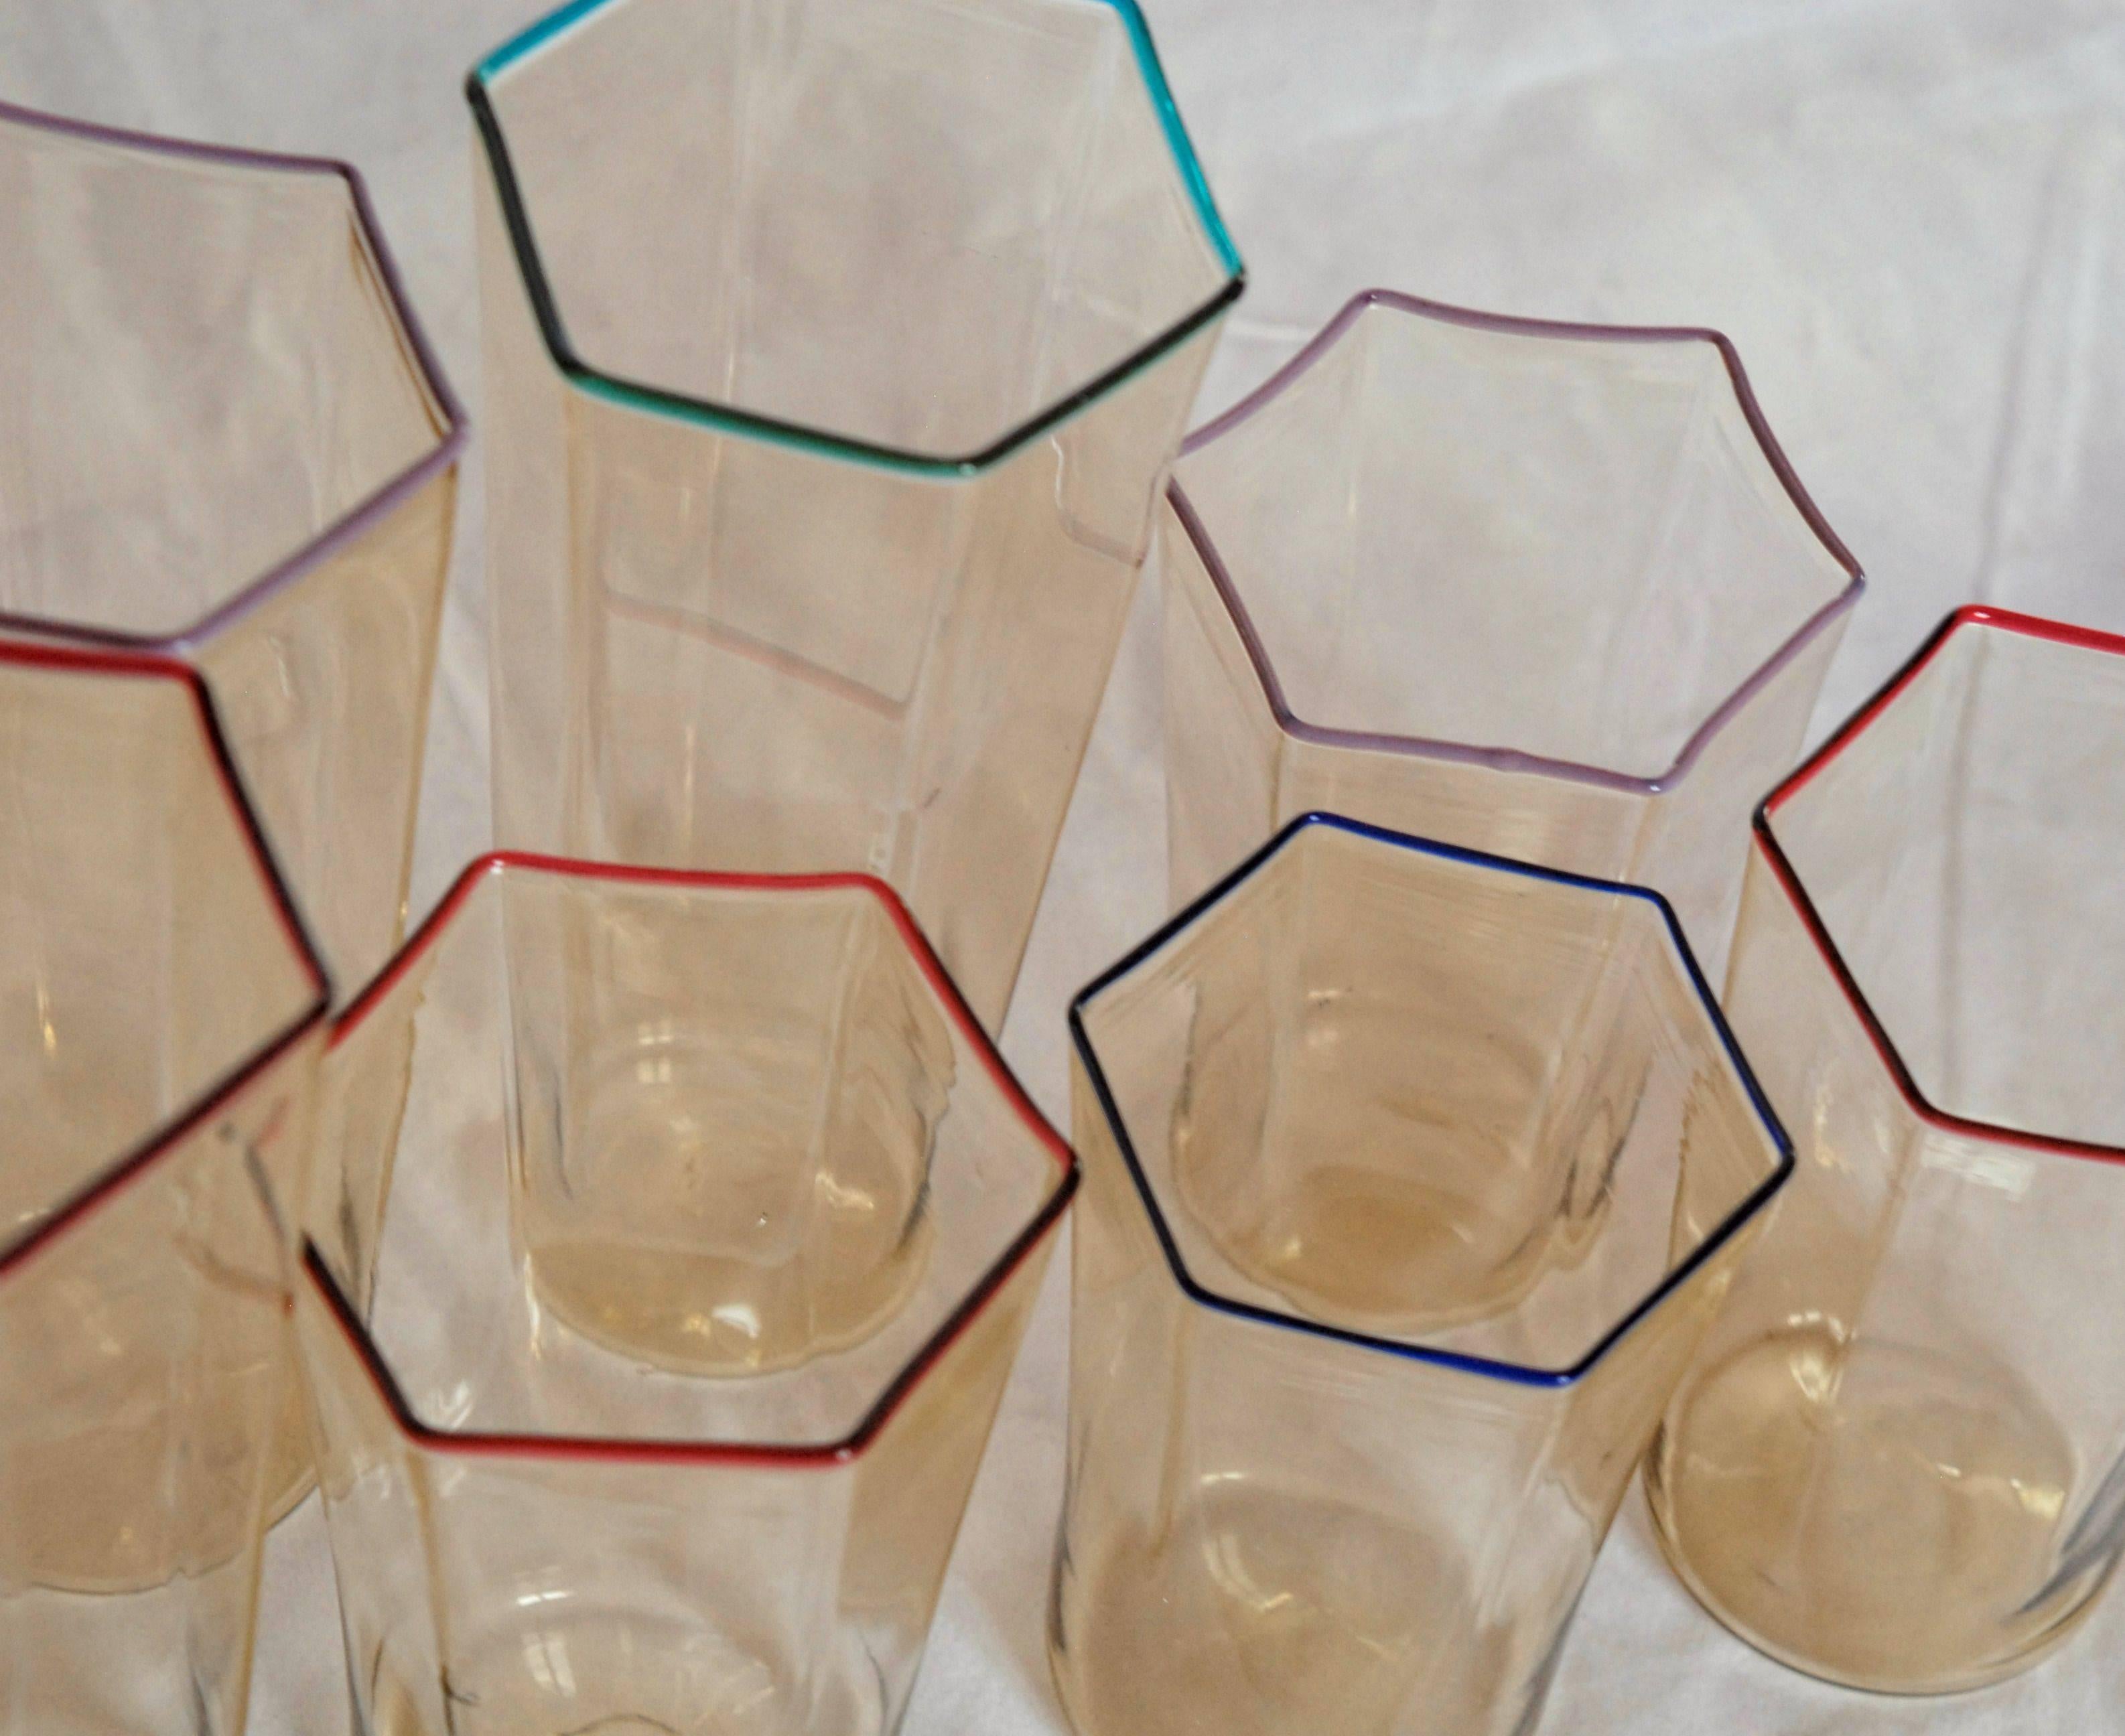 Mid-Century Modern Eight Hexagonal Pagliesco Glasses, Multicolored Rim, Carlo Scarpa 1932 Design